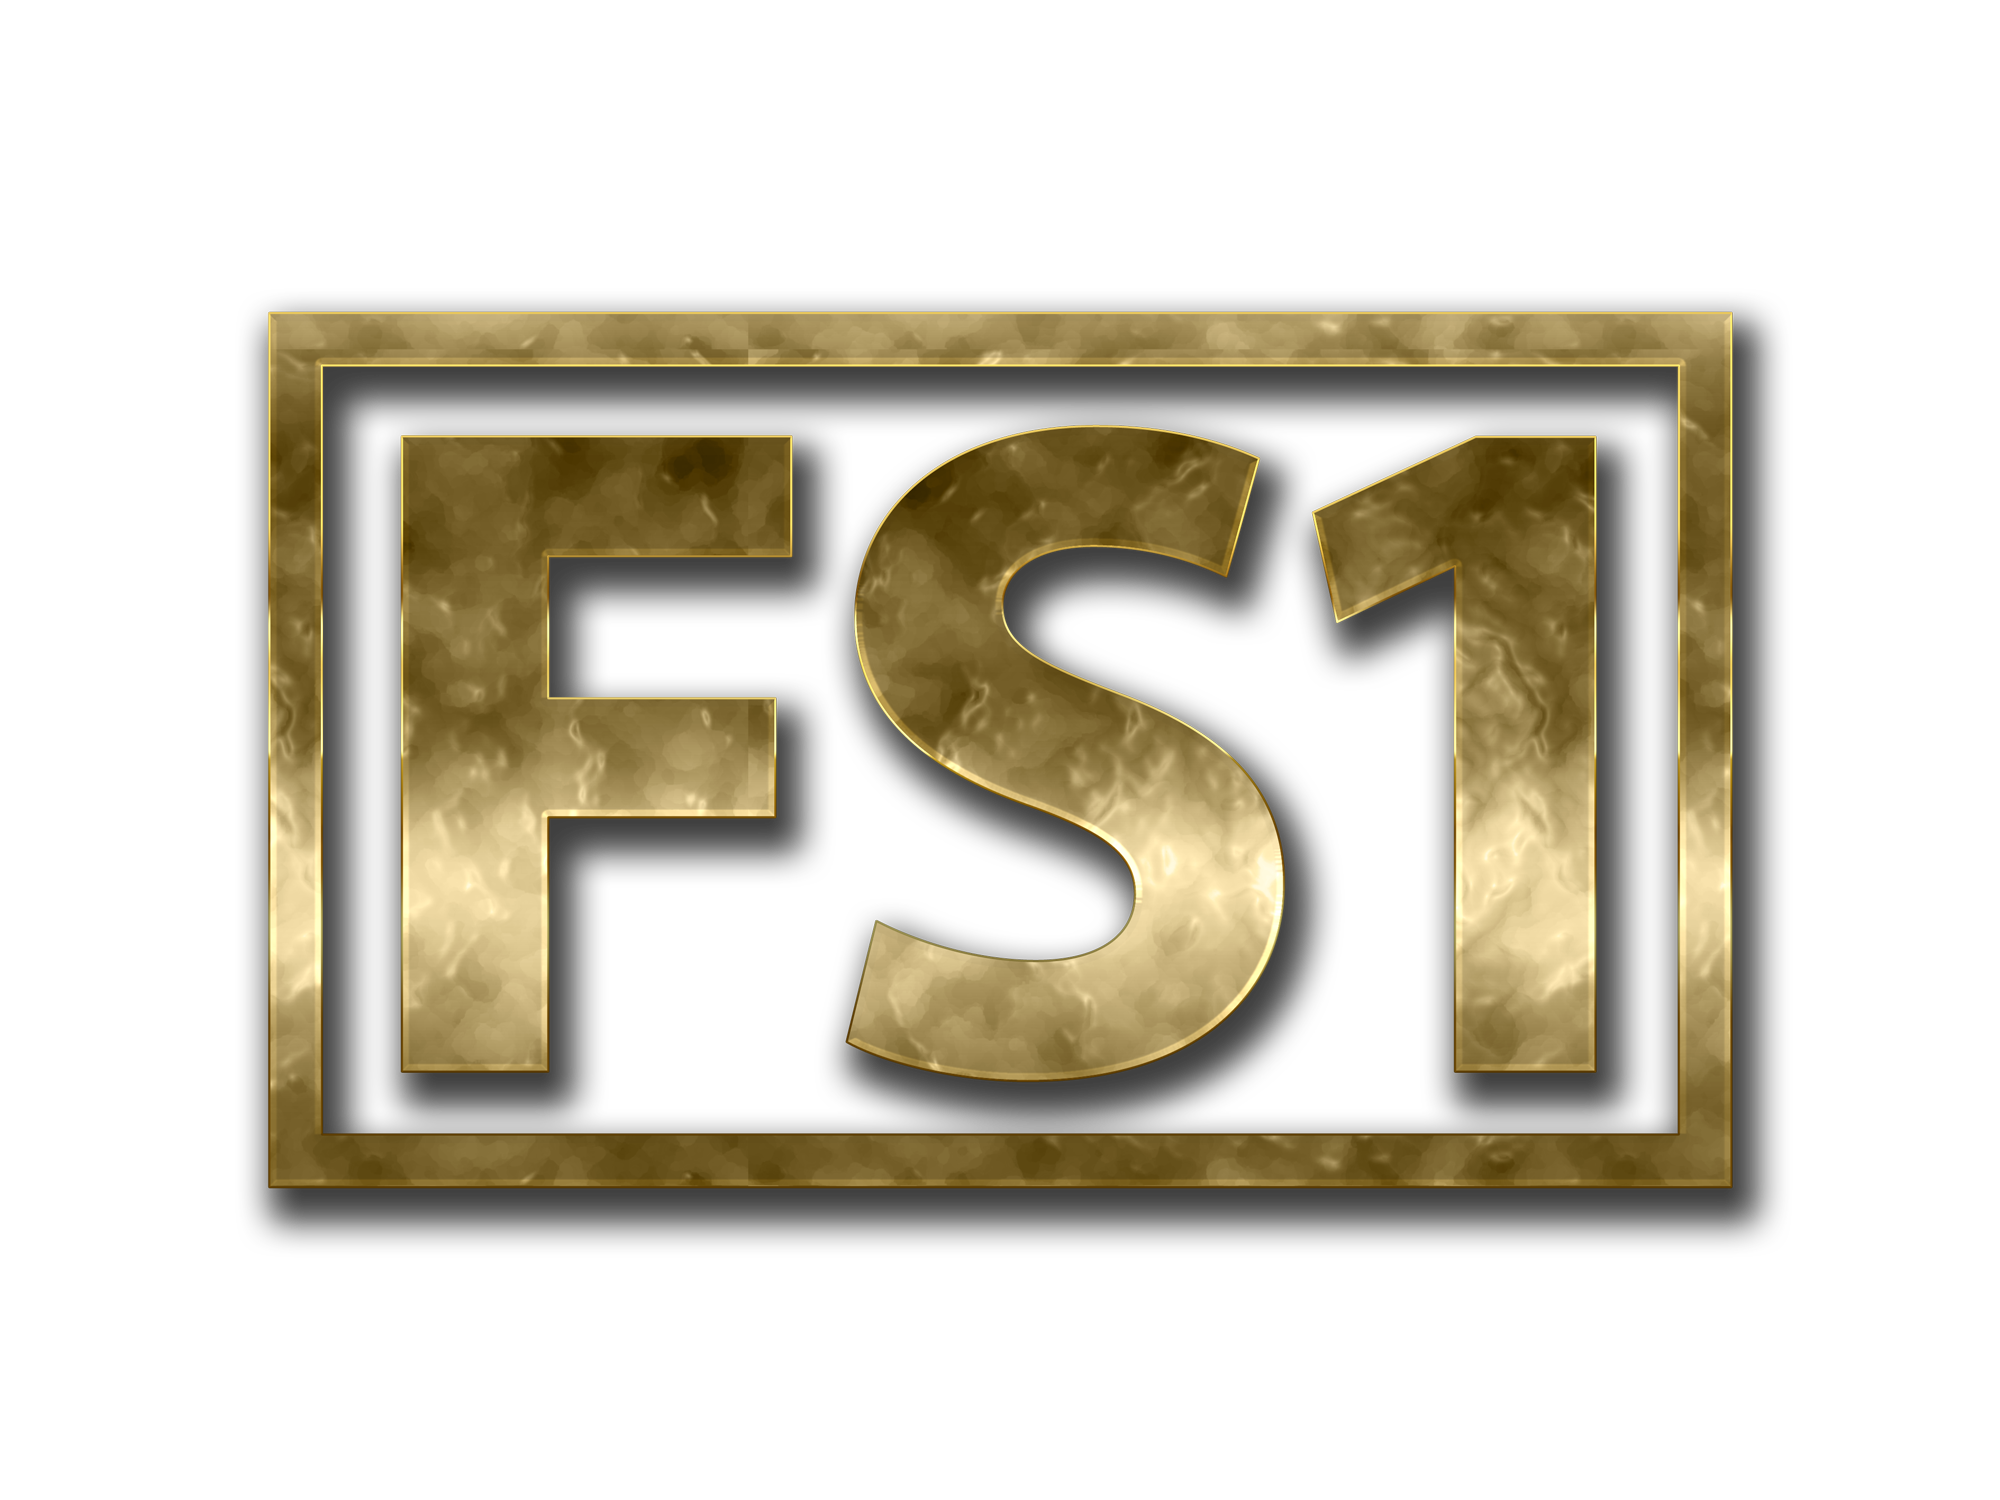 FS1